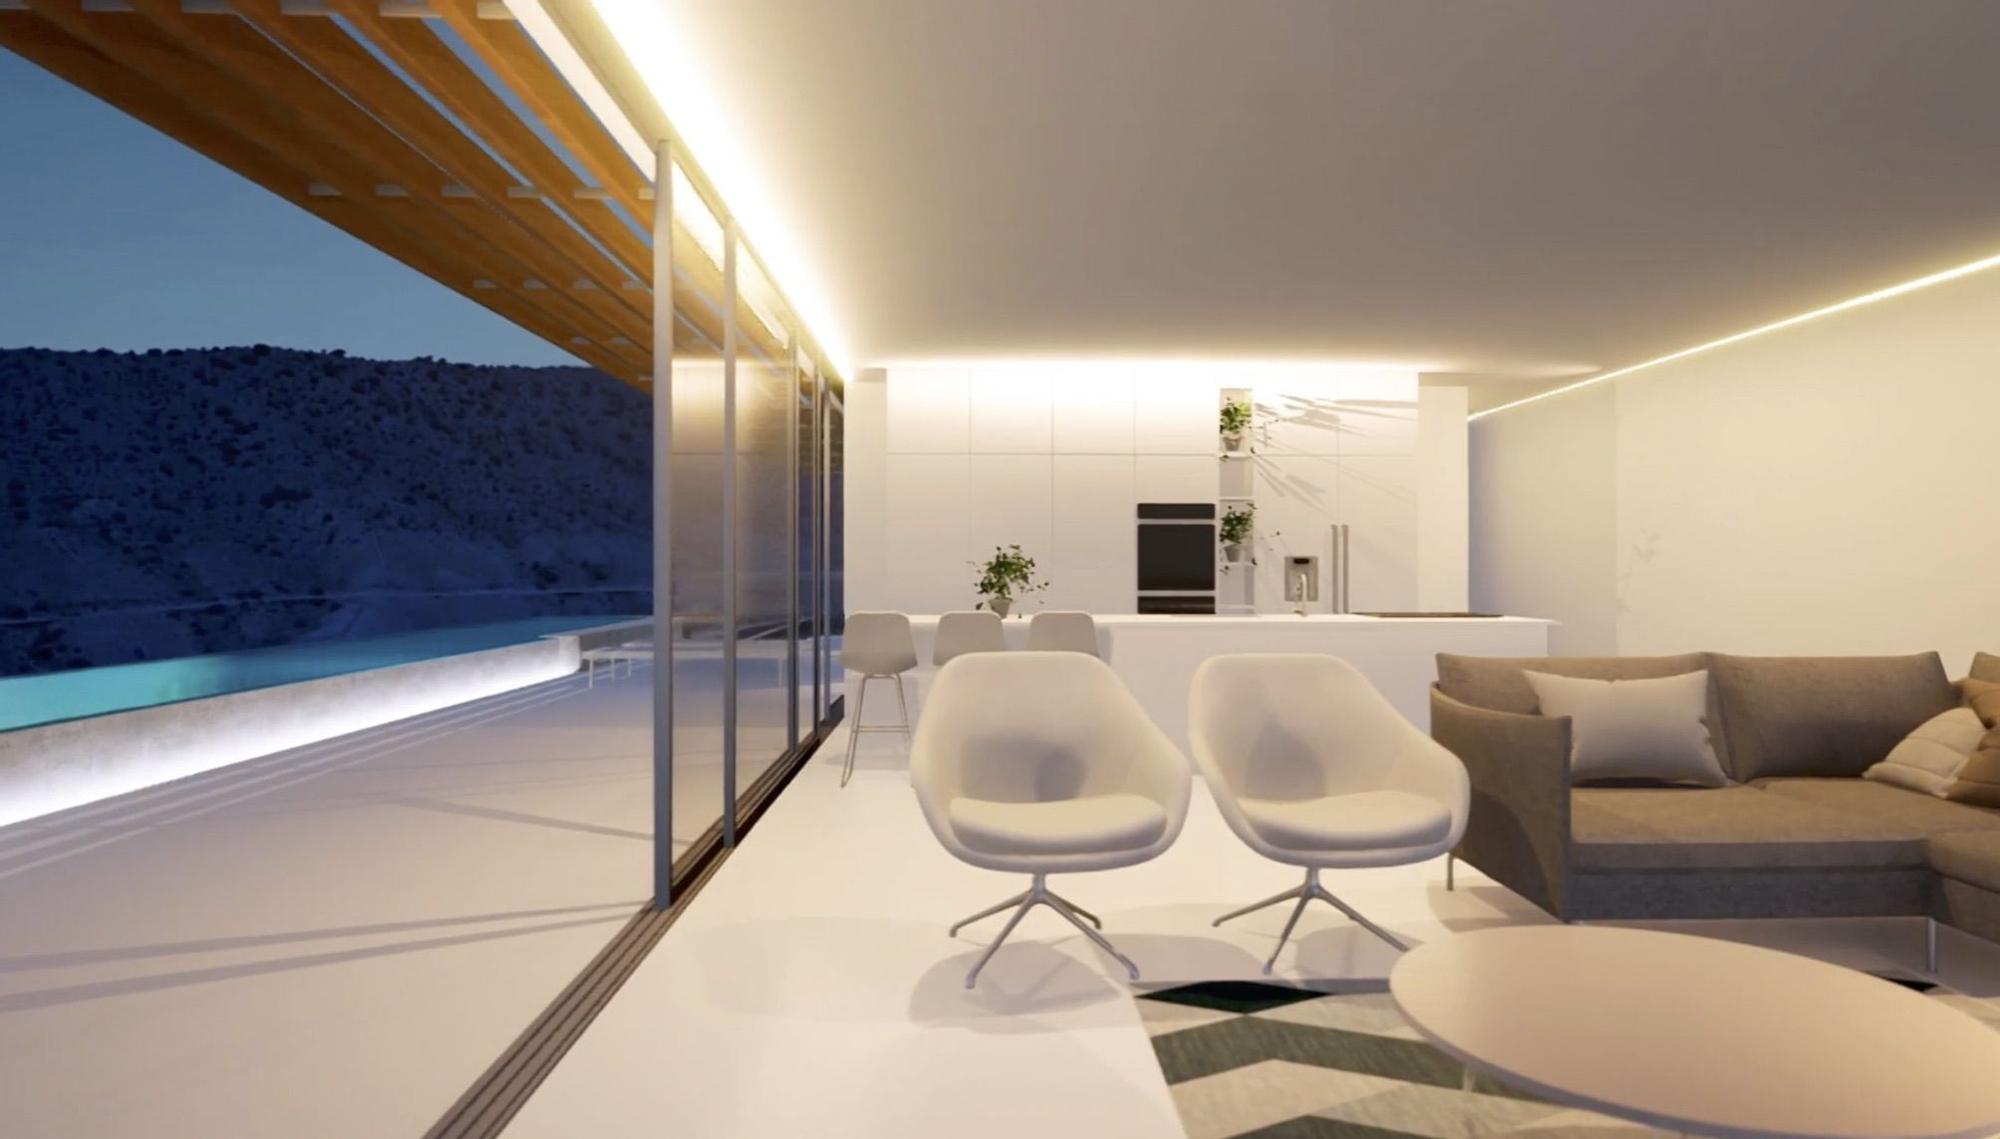 Boutique Canary Real Estate: Villas en Gran Canaria para soñar despierto